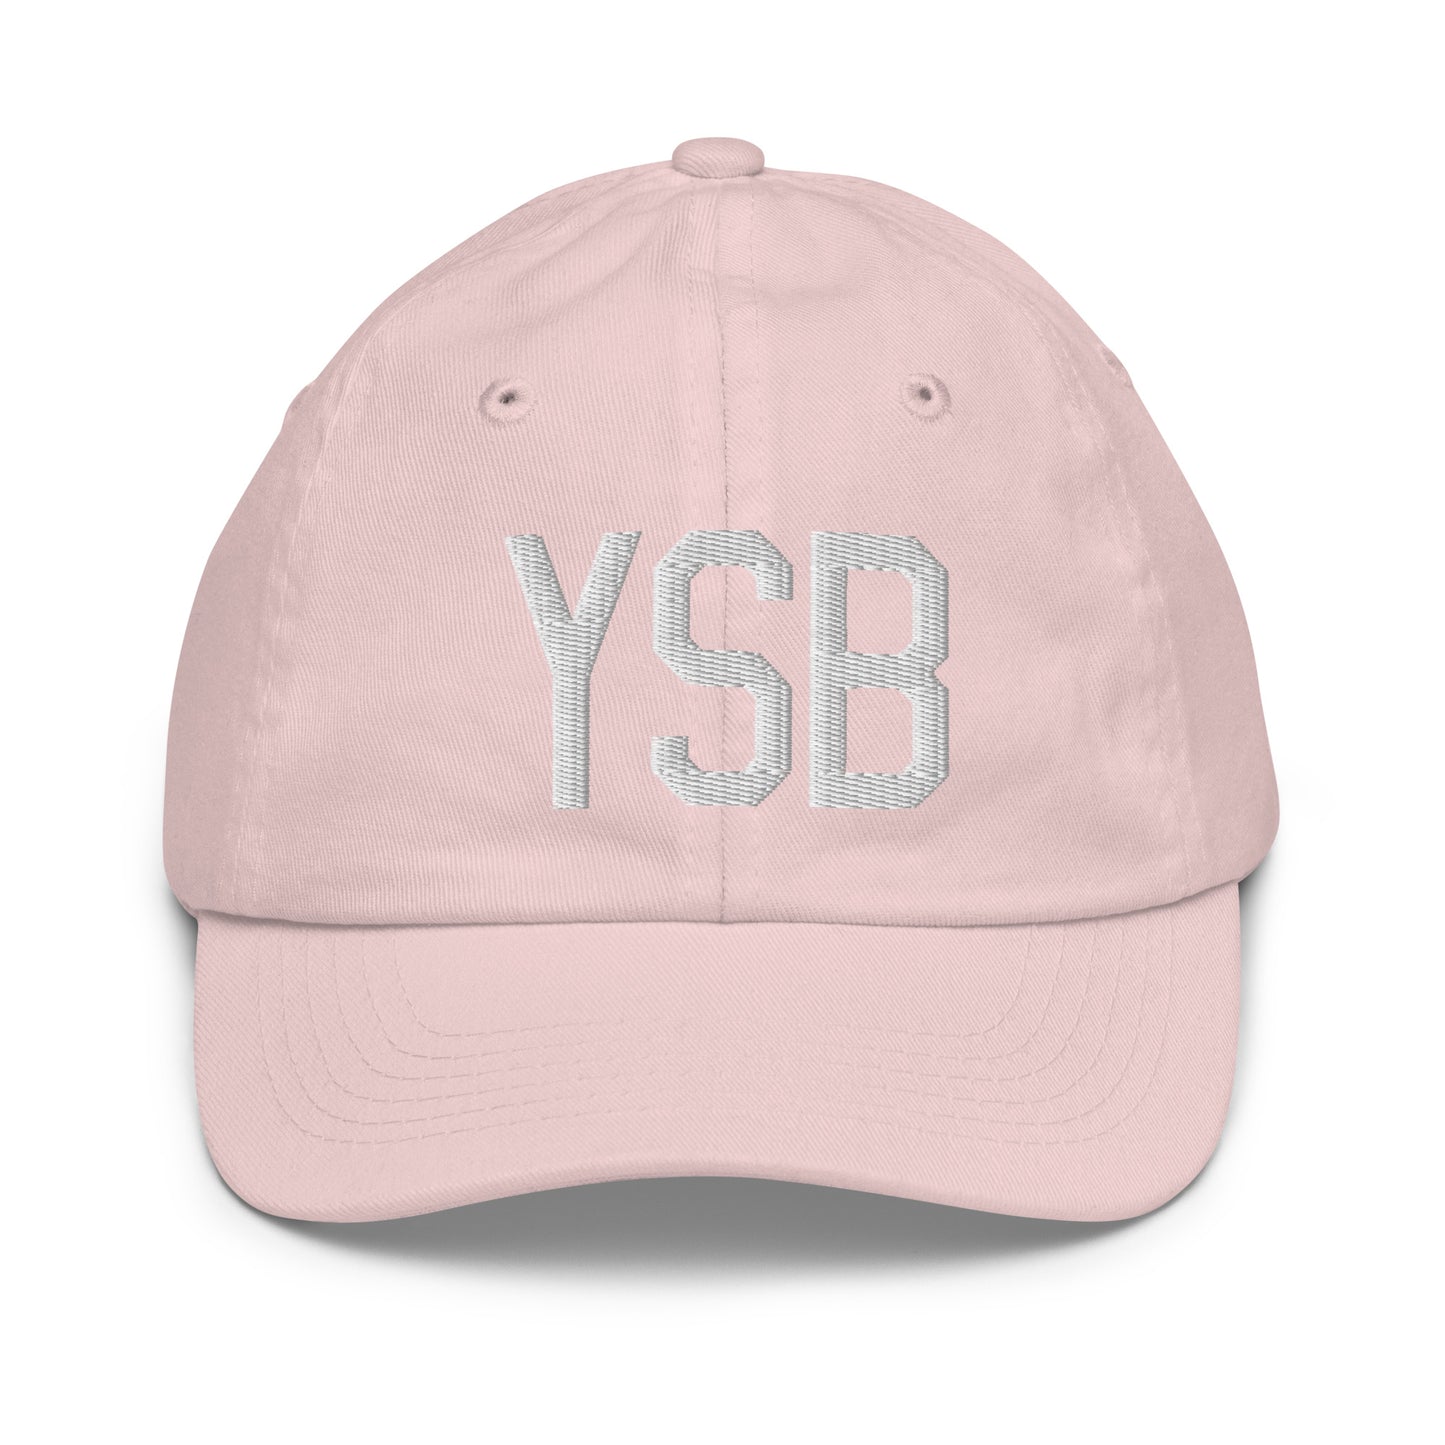 Airport Code Kid's Baseball Cap - White • YSB Sudbury • YHM Designs - Image 31